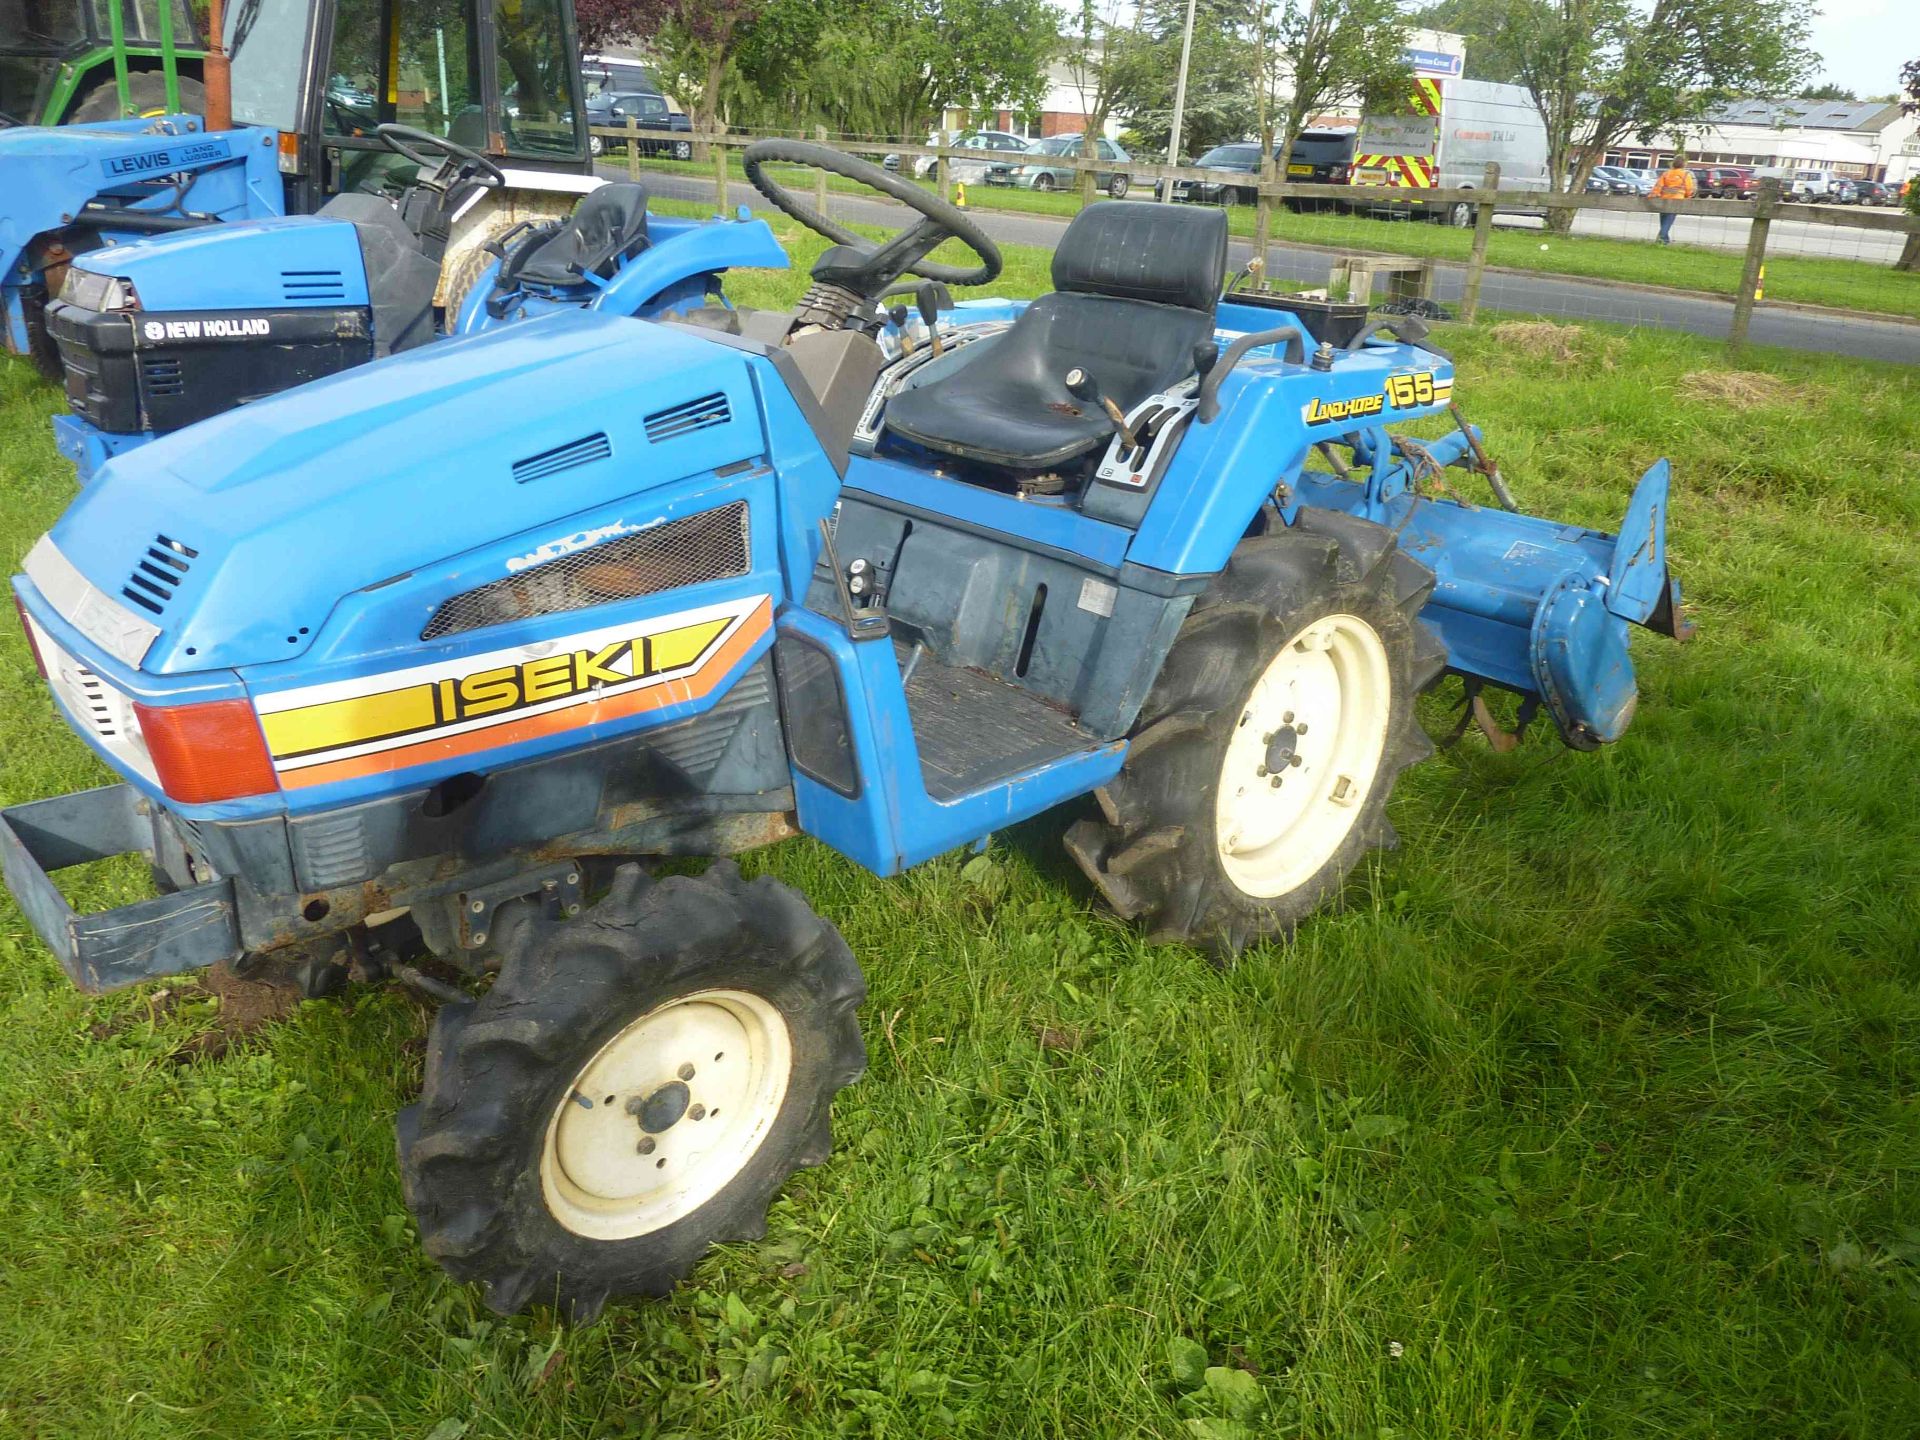 5254 Iseki TU155 4wd tractor